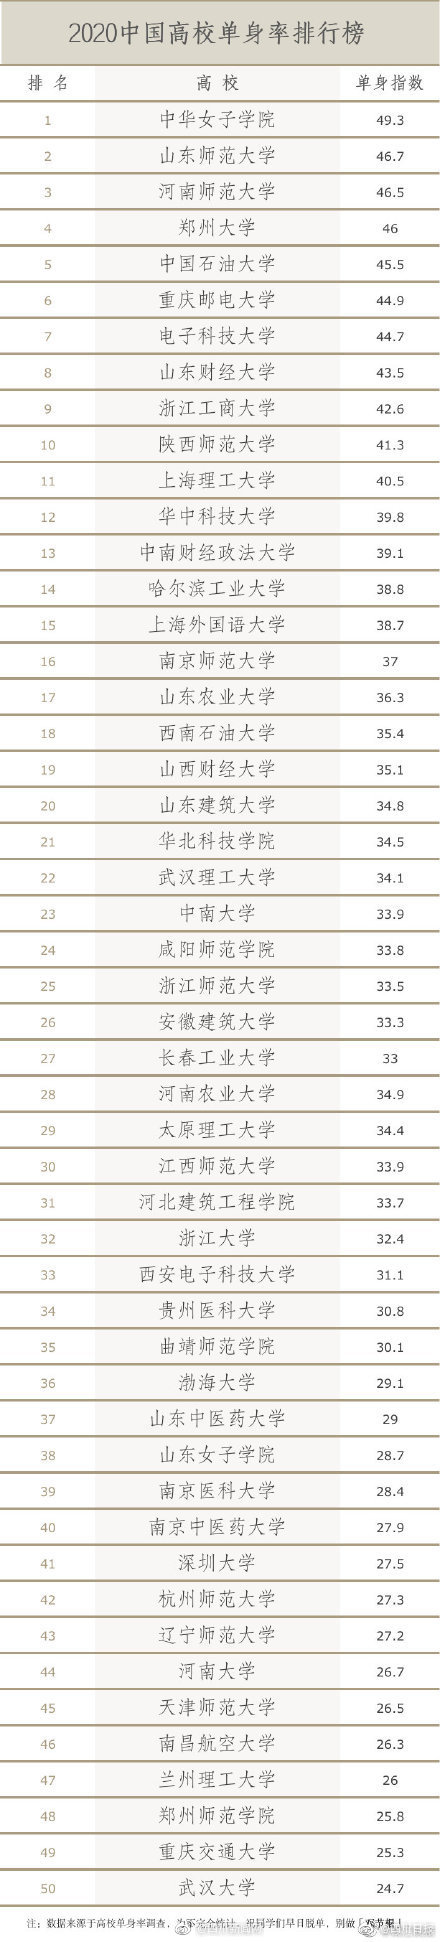 【单身亚文化】中国高校单身率排行榜出炉 师范类高校占比1/4